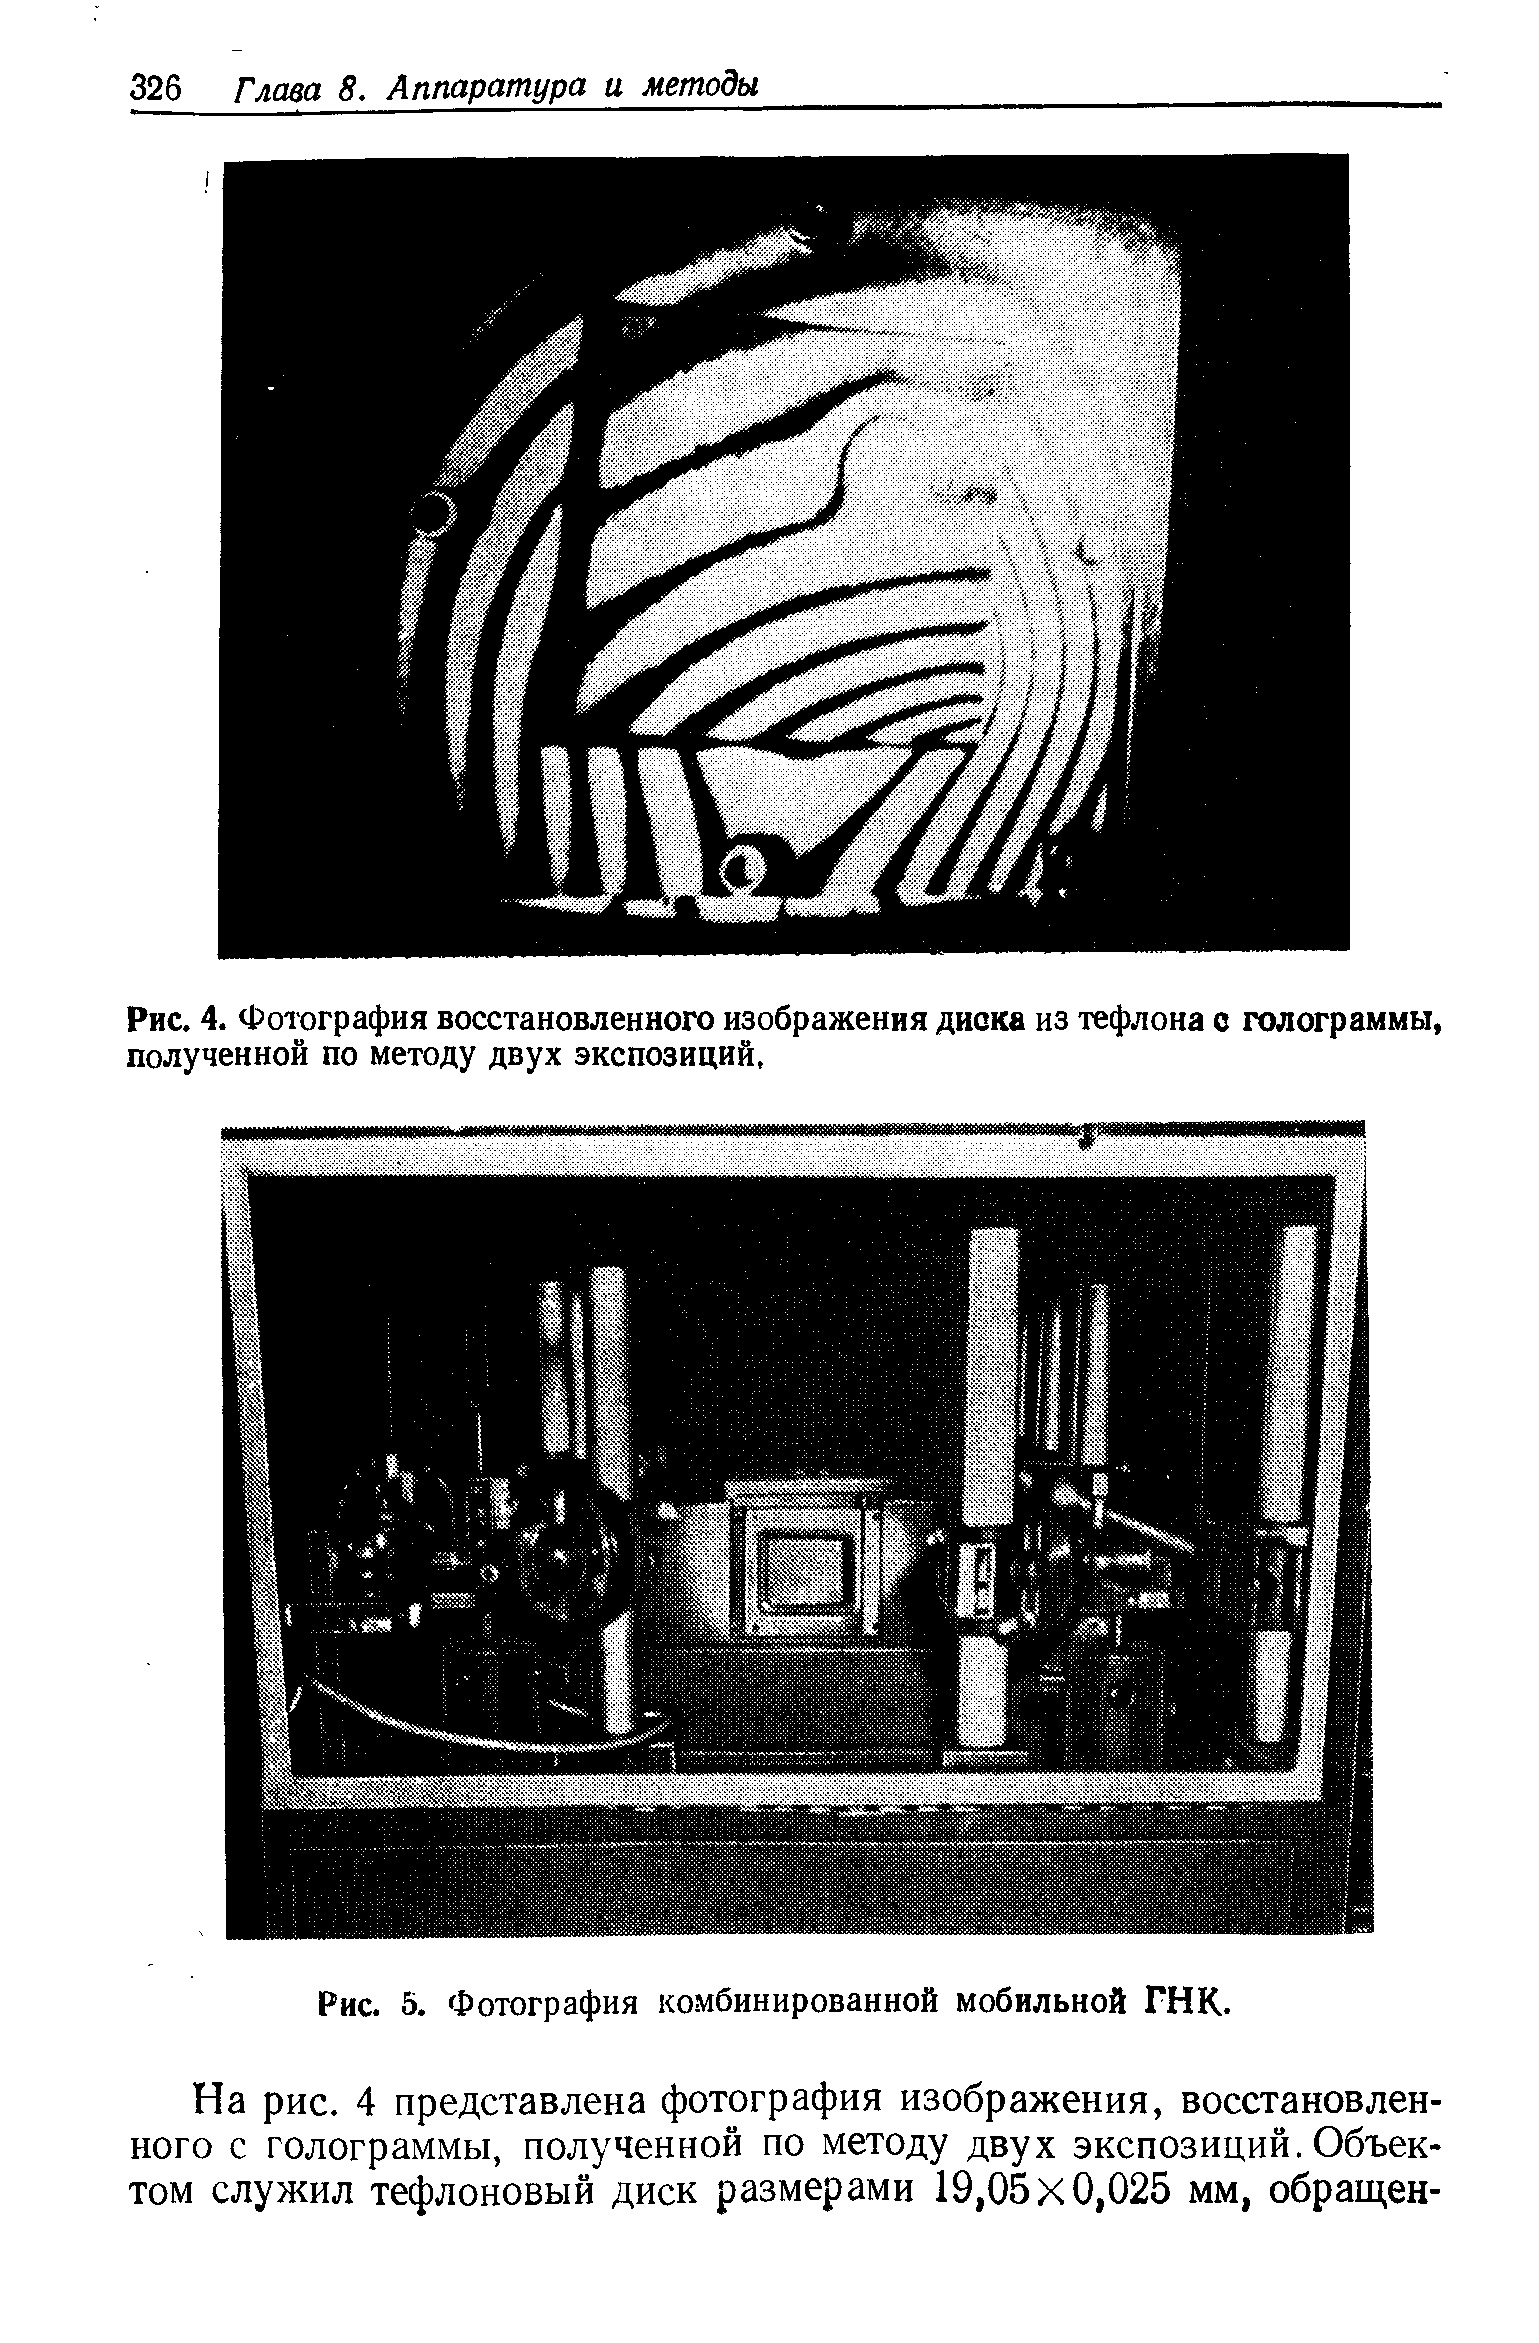 Рис. 4. Фотография <a href="/info/175564">восстановленного изображения</a> диока из тефлона о голограммы, полученной по методу двух экспозиций,
